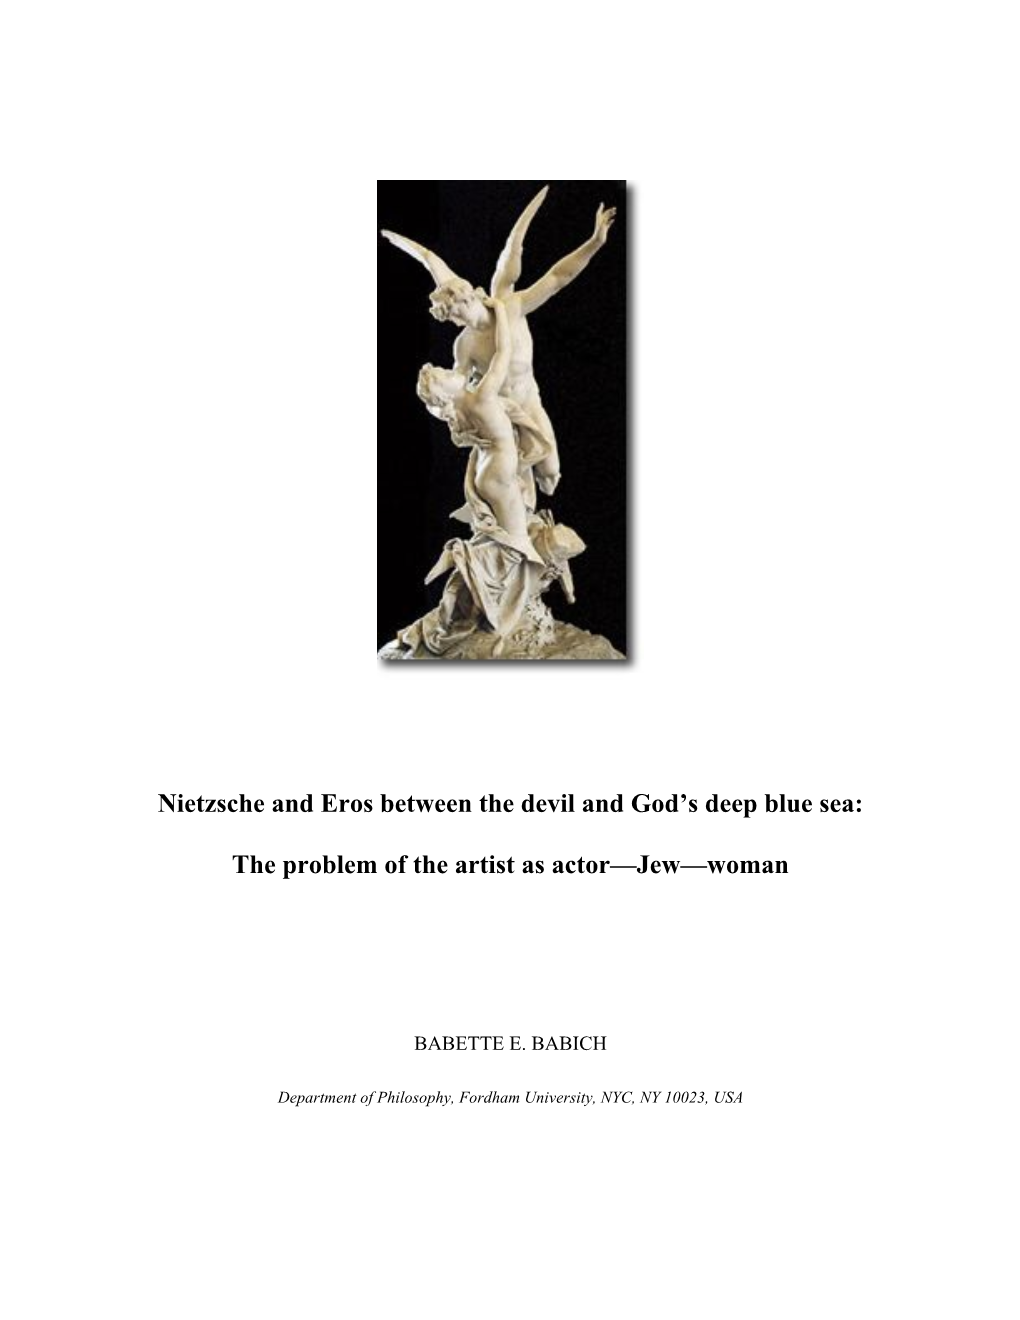 Nietzsche and Eros Between the Devil and God's Deep